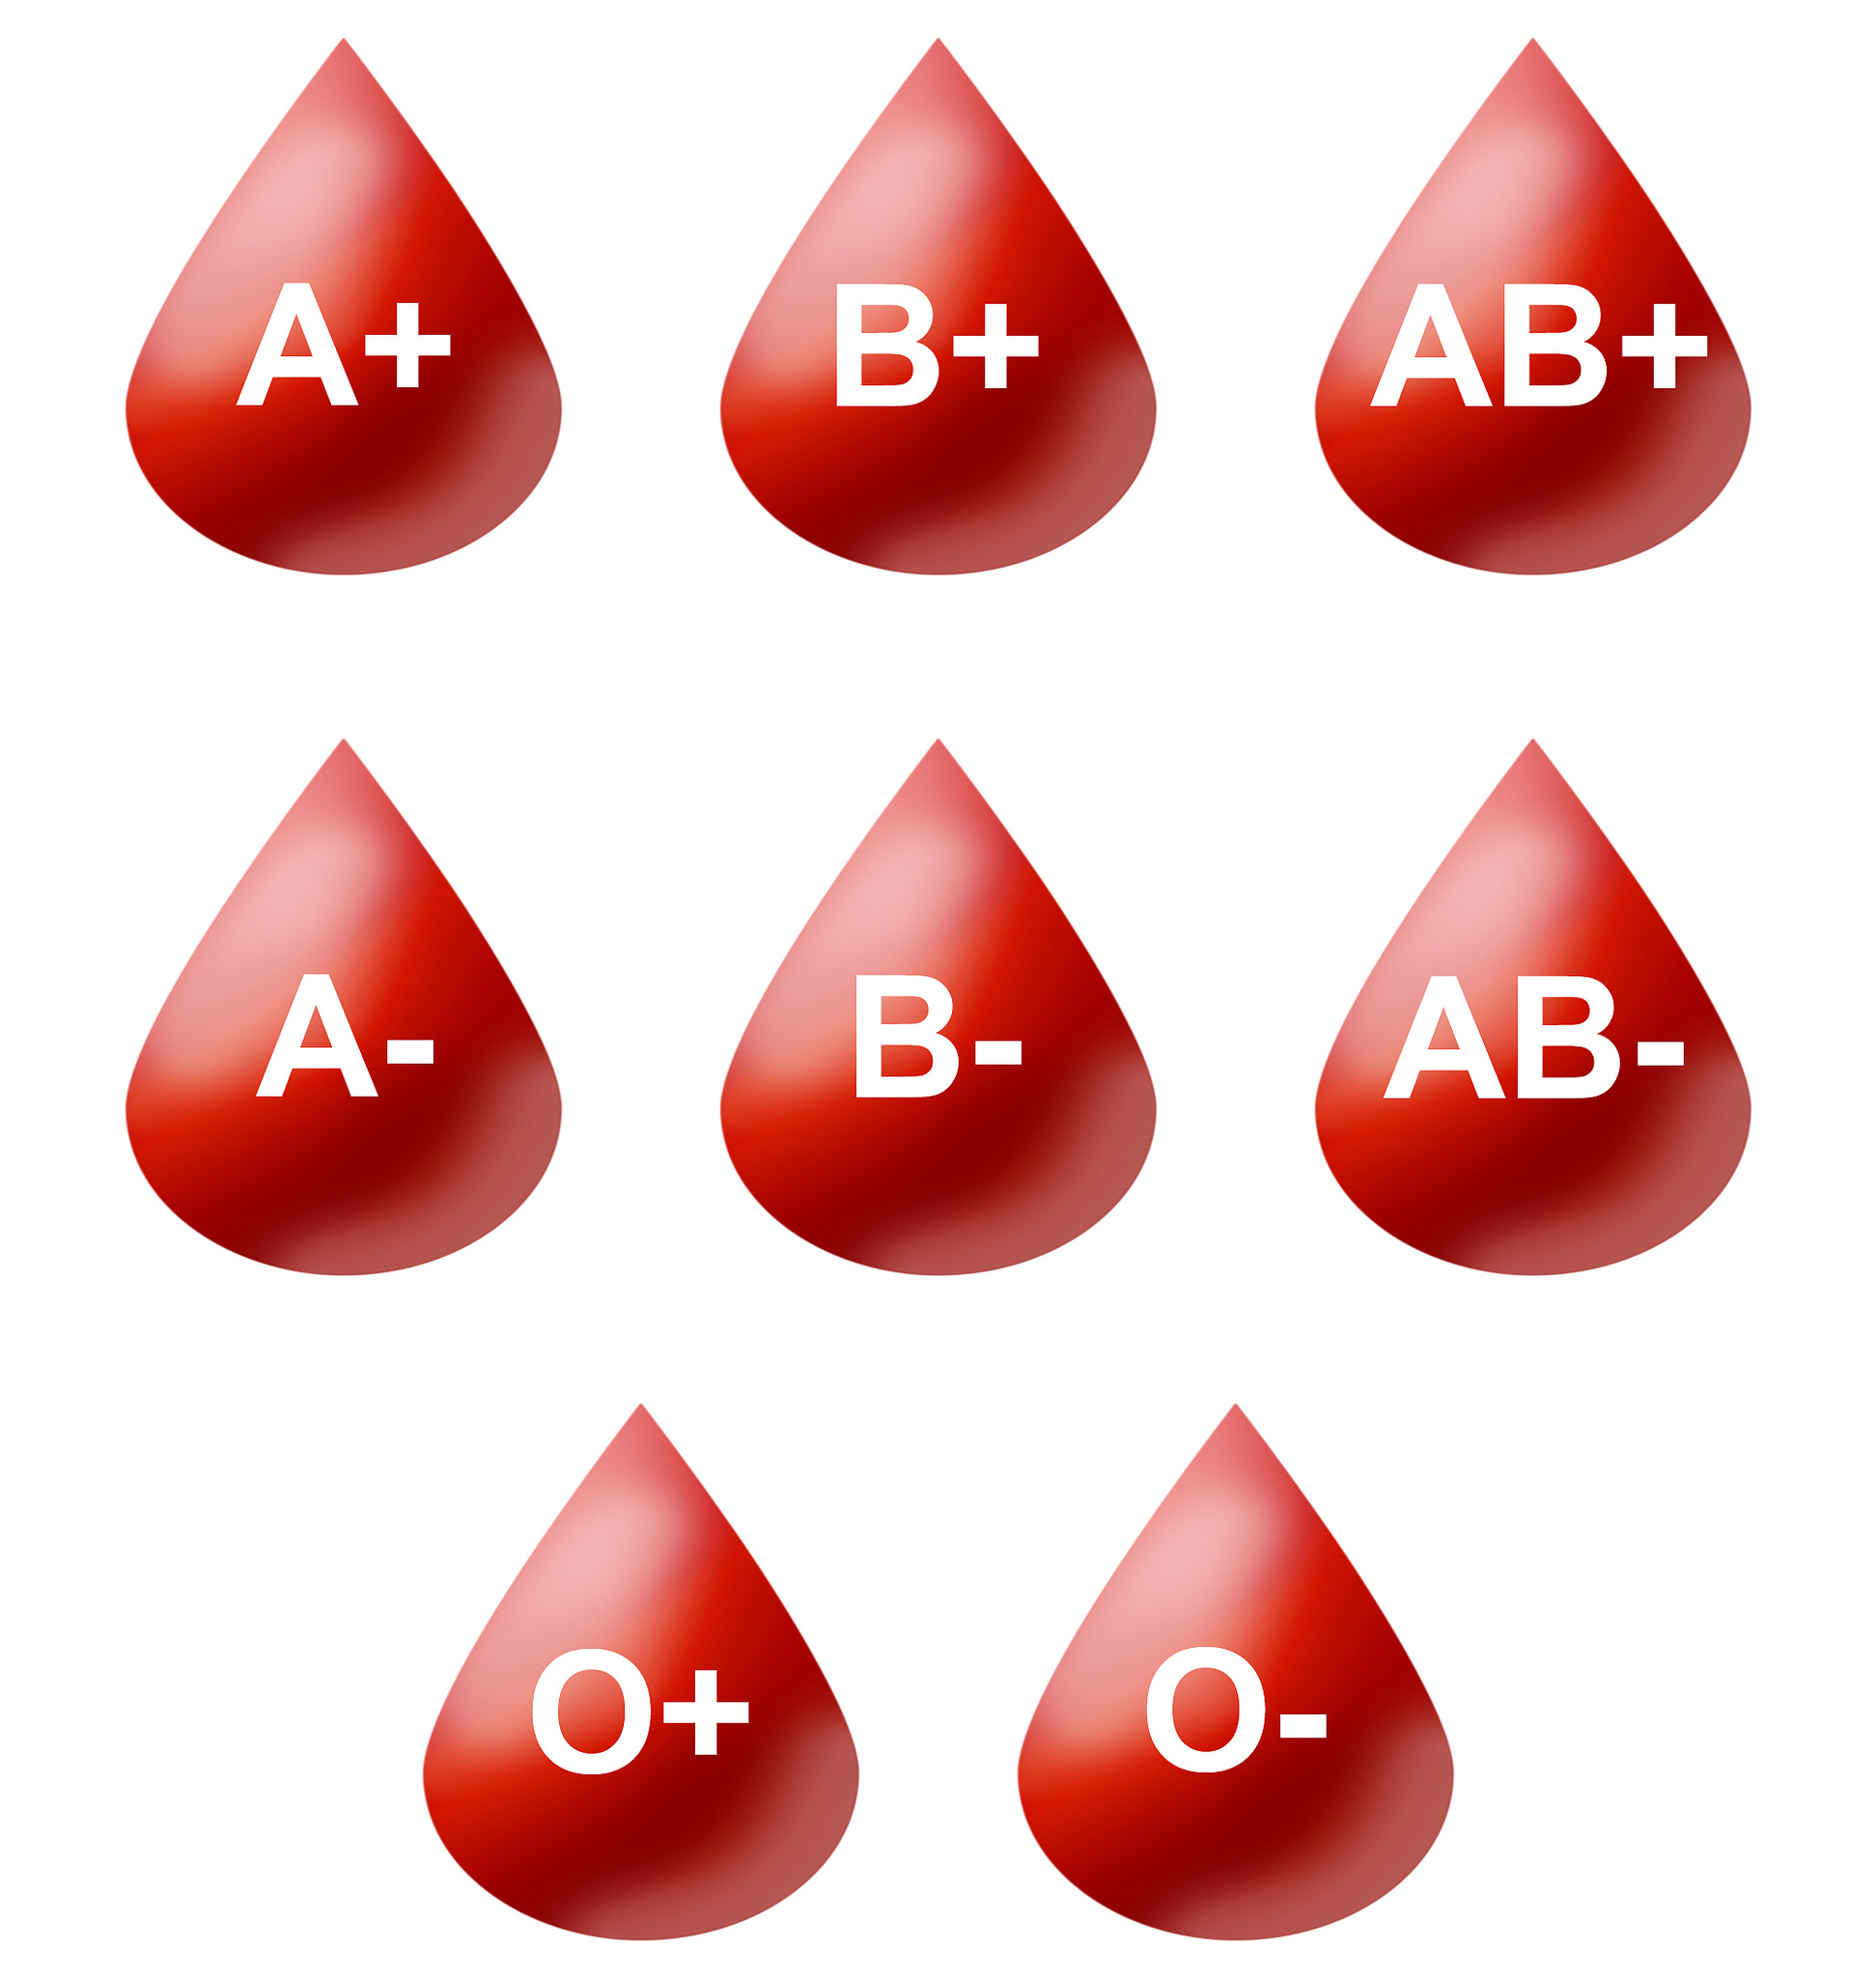 نوع گروه خونی شدت بیماری کووید ۱۹ را پیش بینی می کند